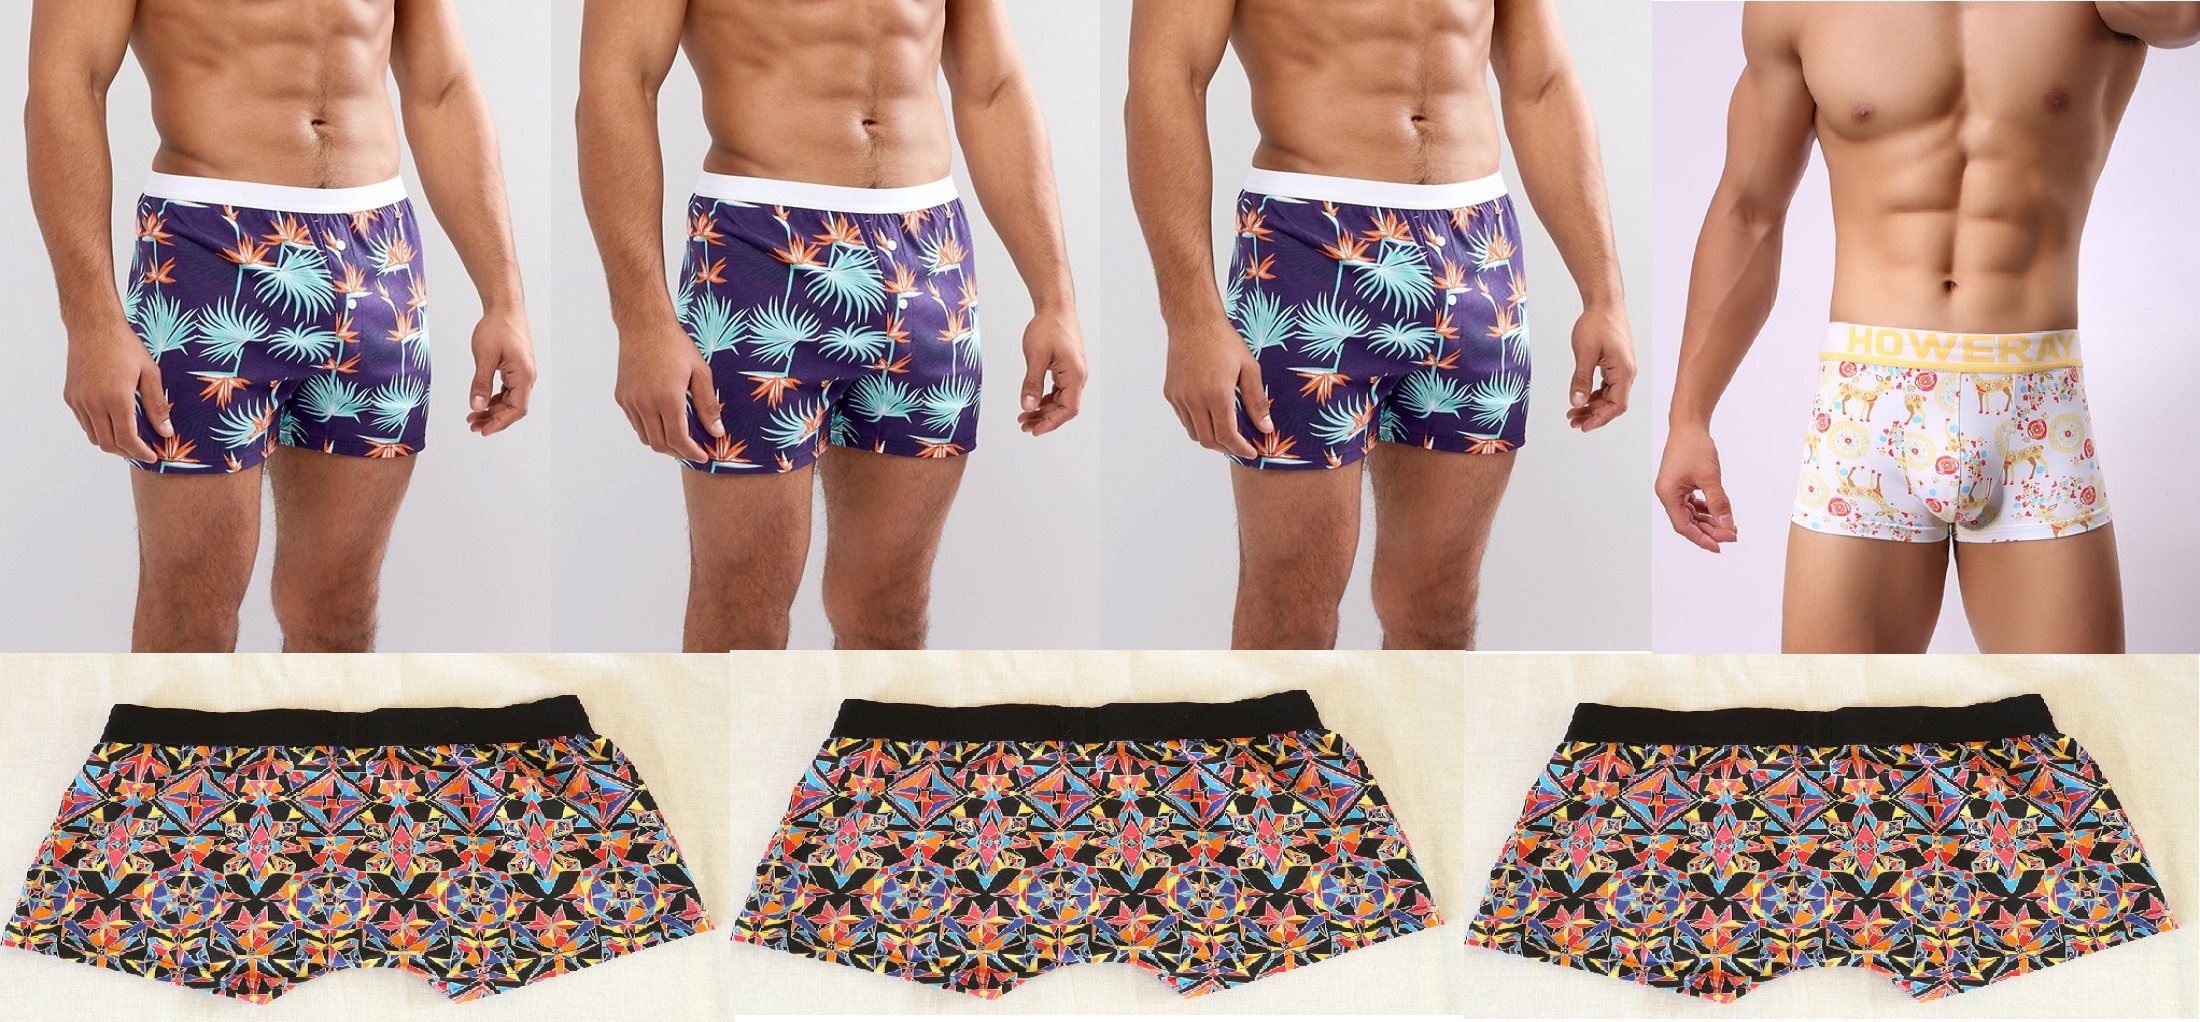 Best Anti-chafing Underwear for Men